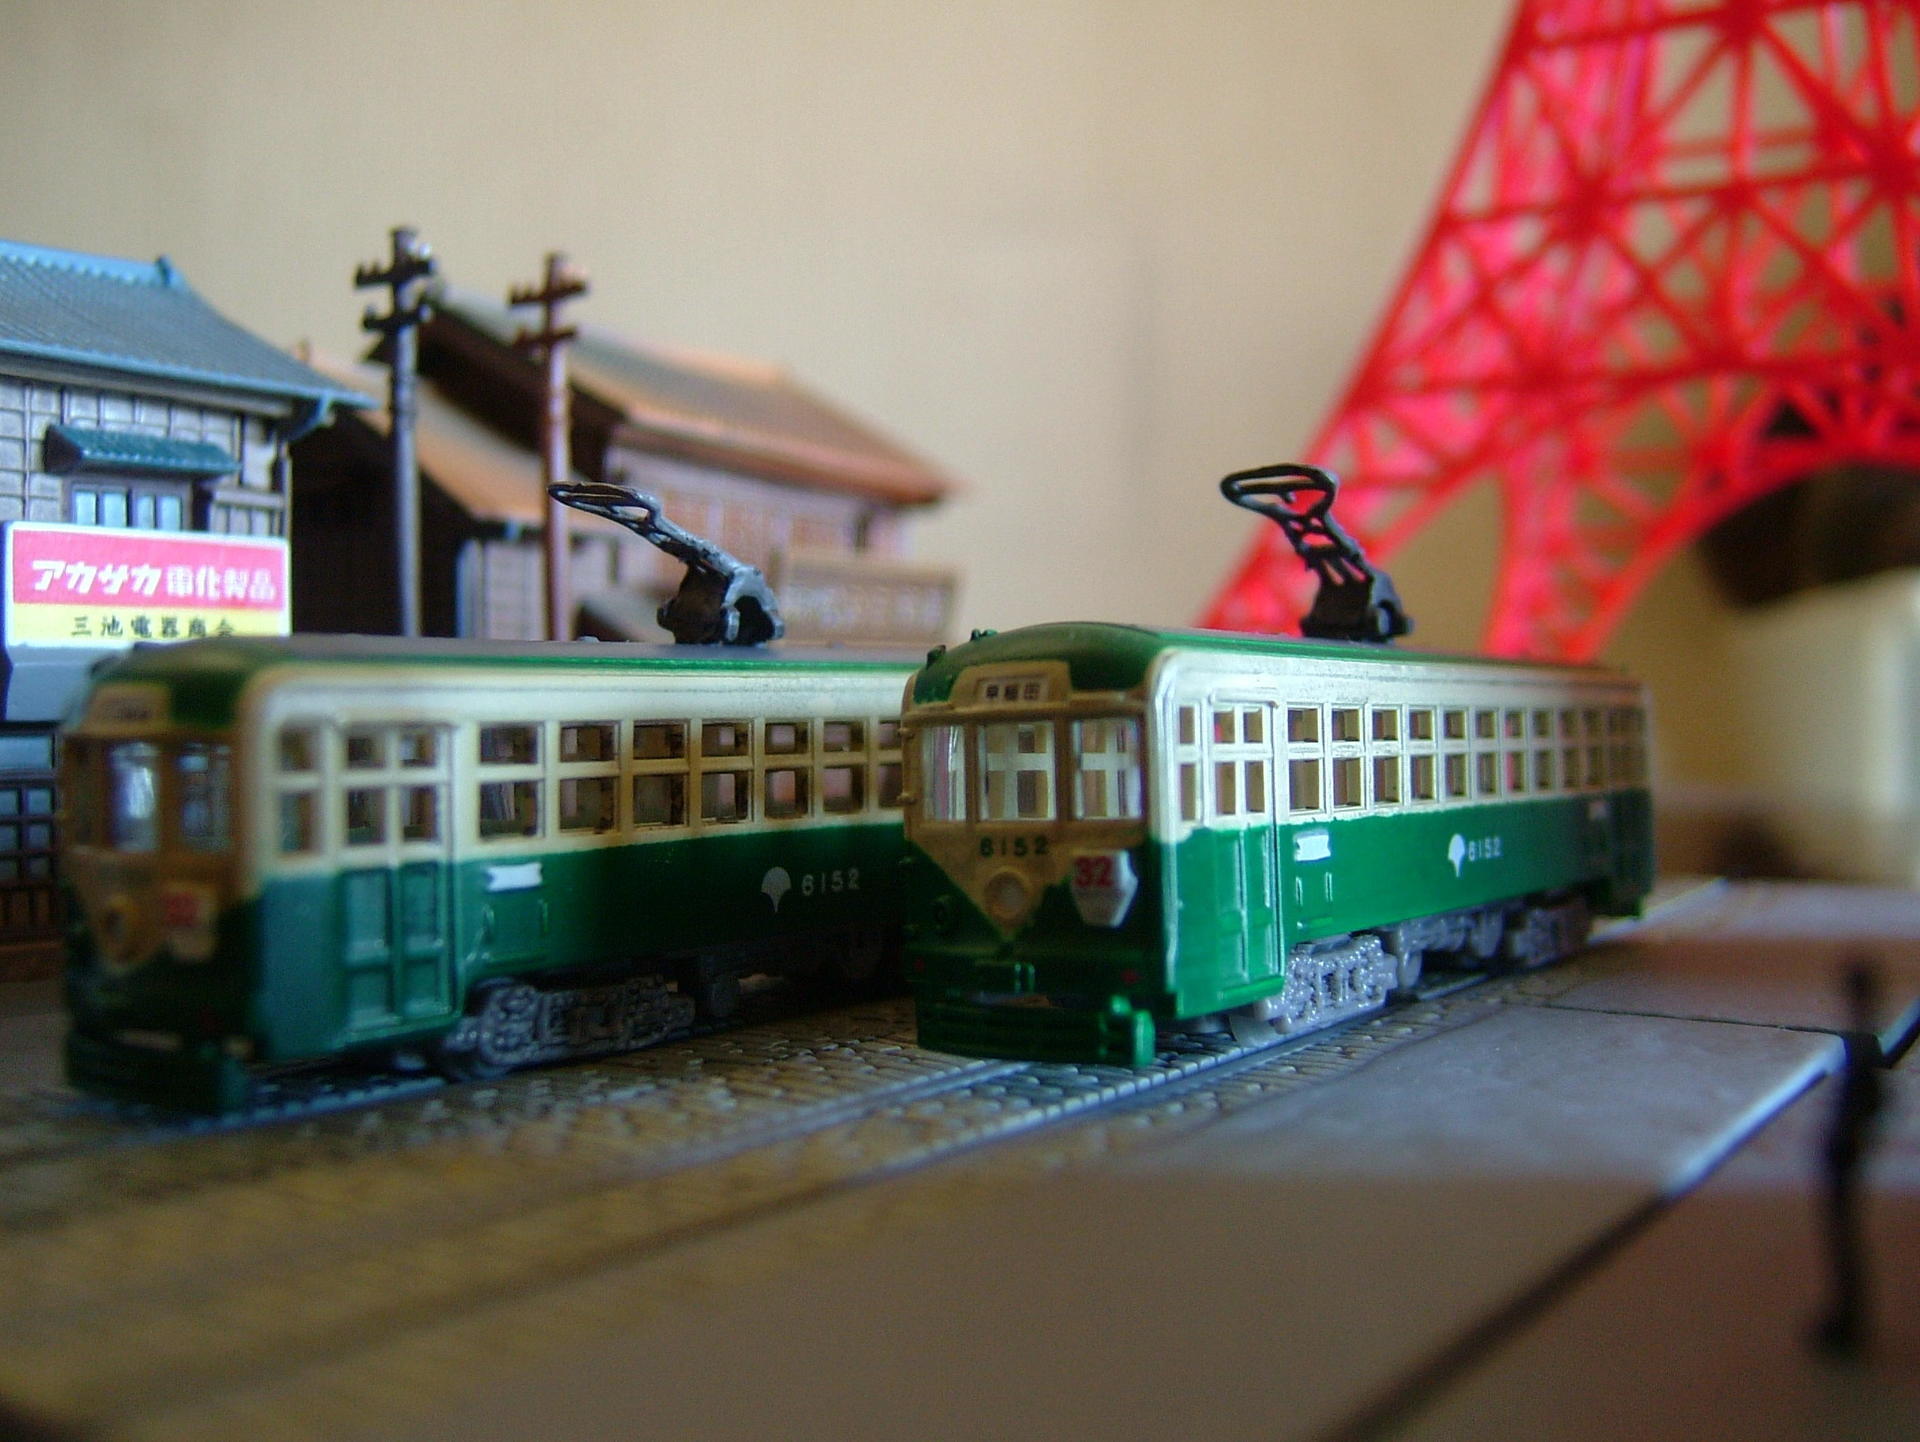 昭和情景博物館・都電の風景: Mr.Tetsuoの鉄道と芸能界系の話題と趣味日誌